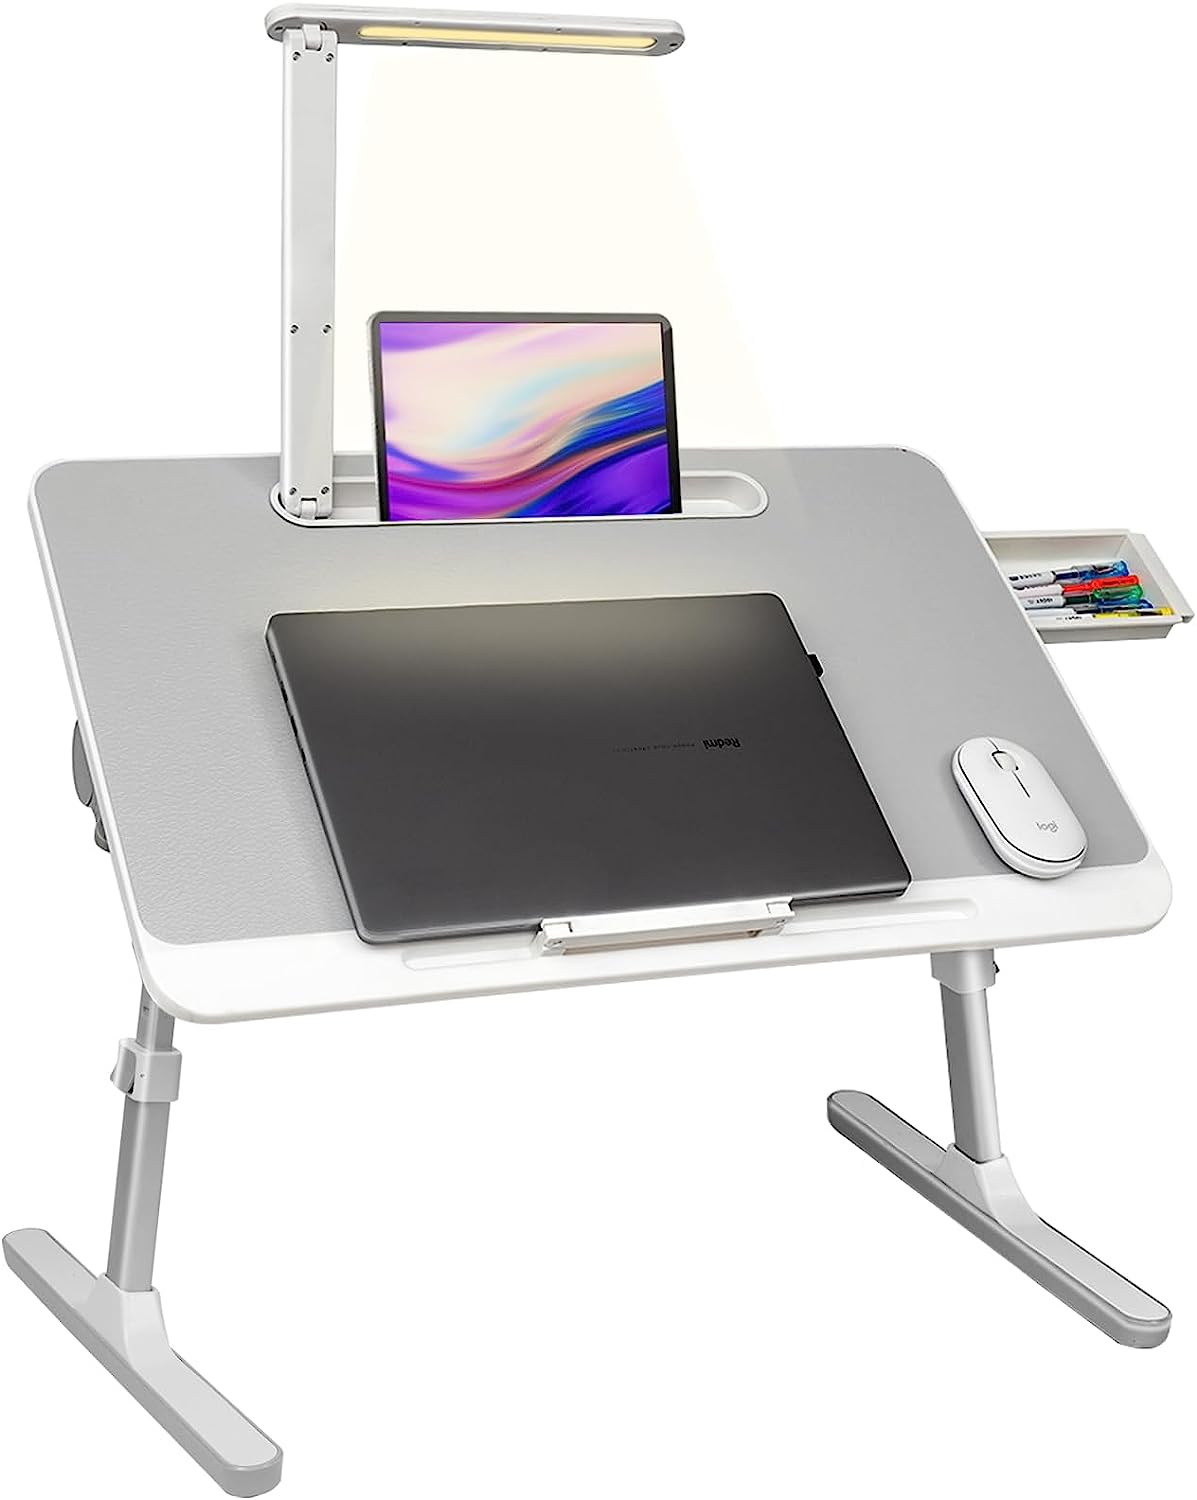 Smart Lap Desk For Laptop